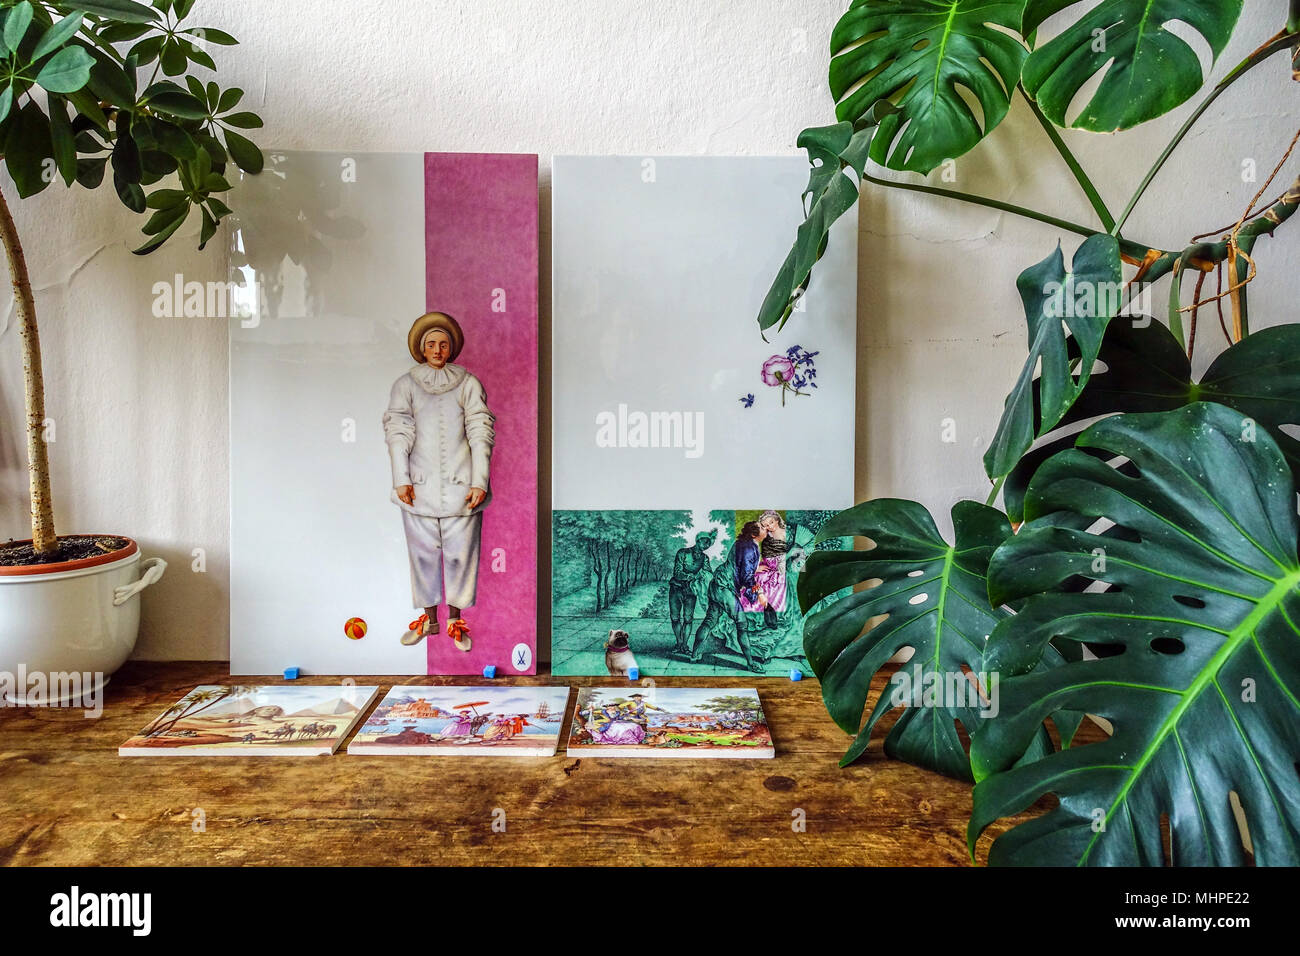 Meissener Porzellan fliesen Fabrik, Stillleben mit einem Mime unter Zimmerpflanze, Meissen Deutschland Stockfoto